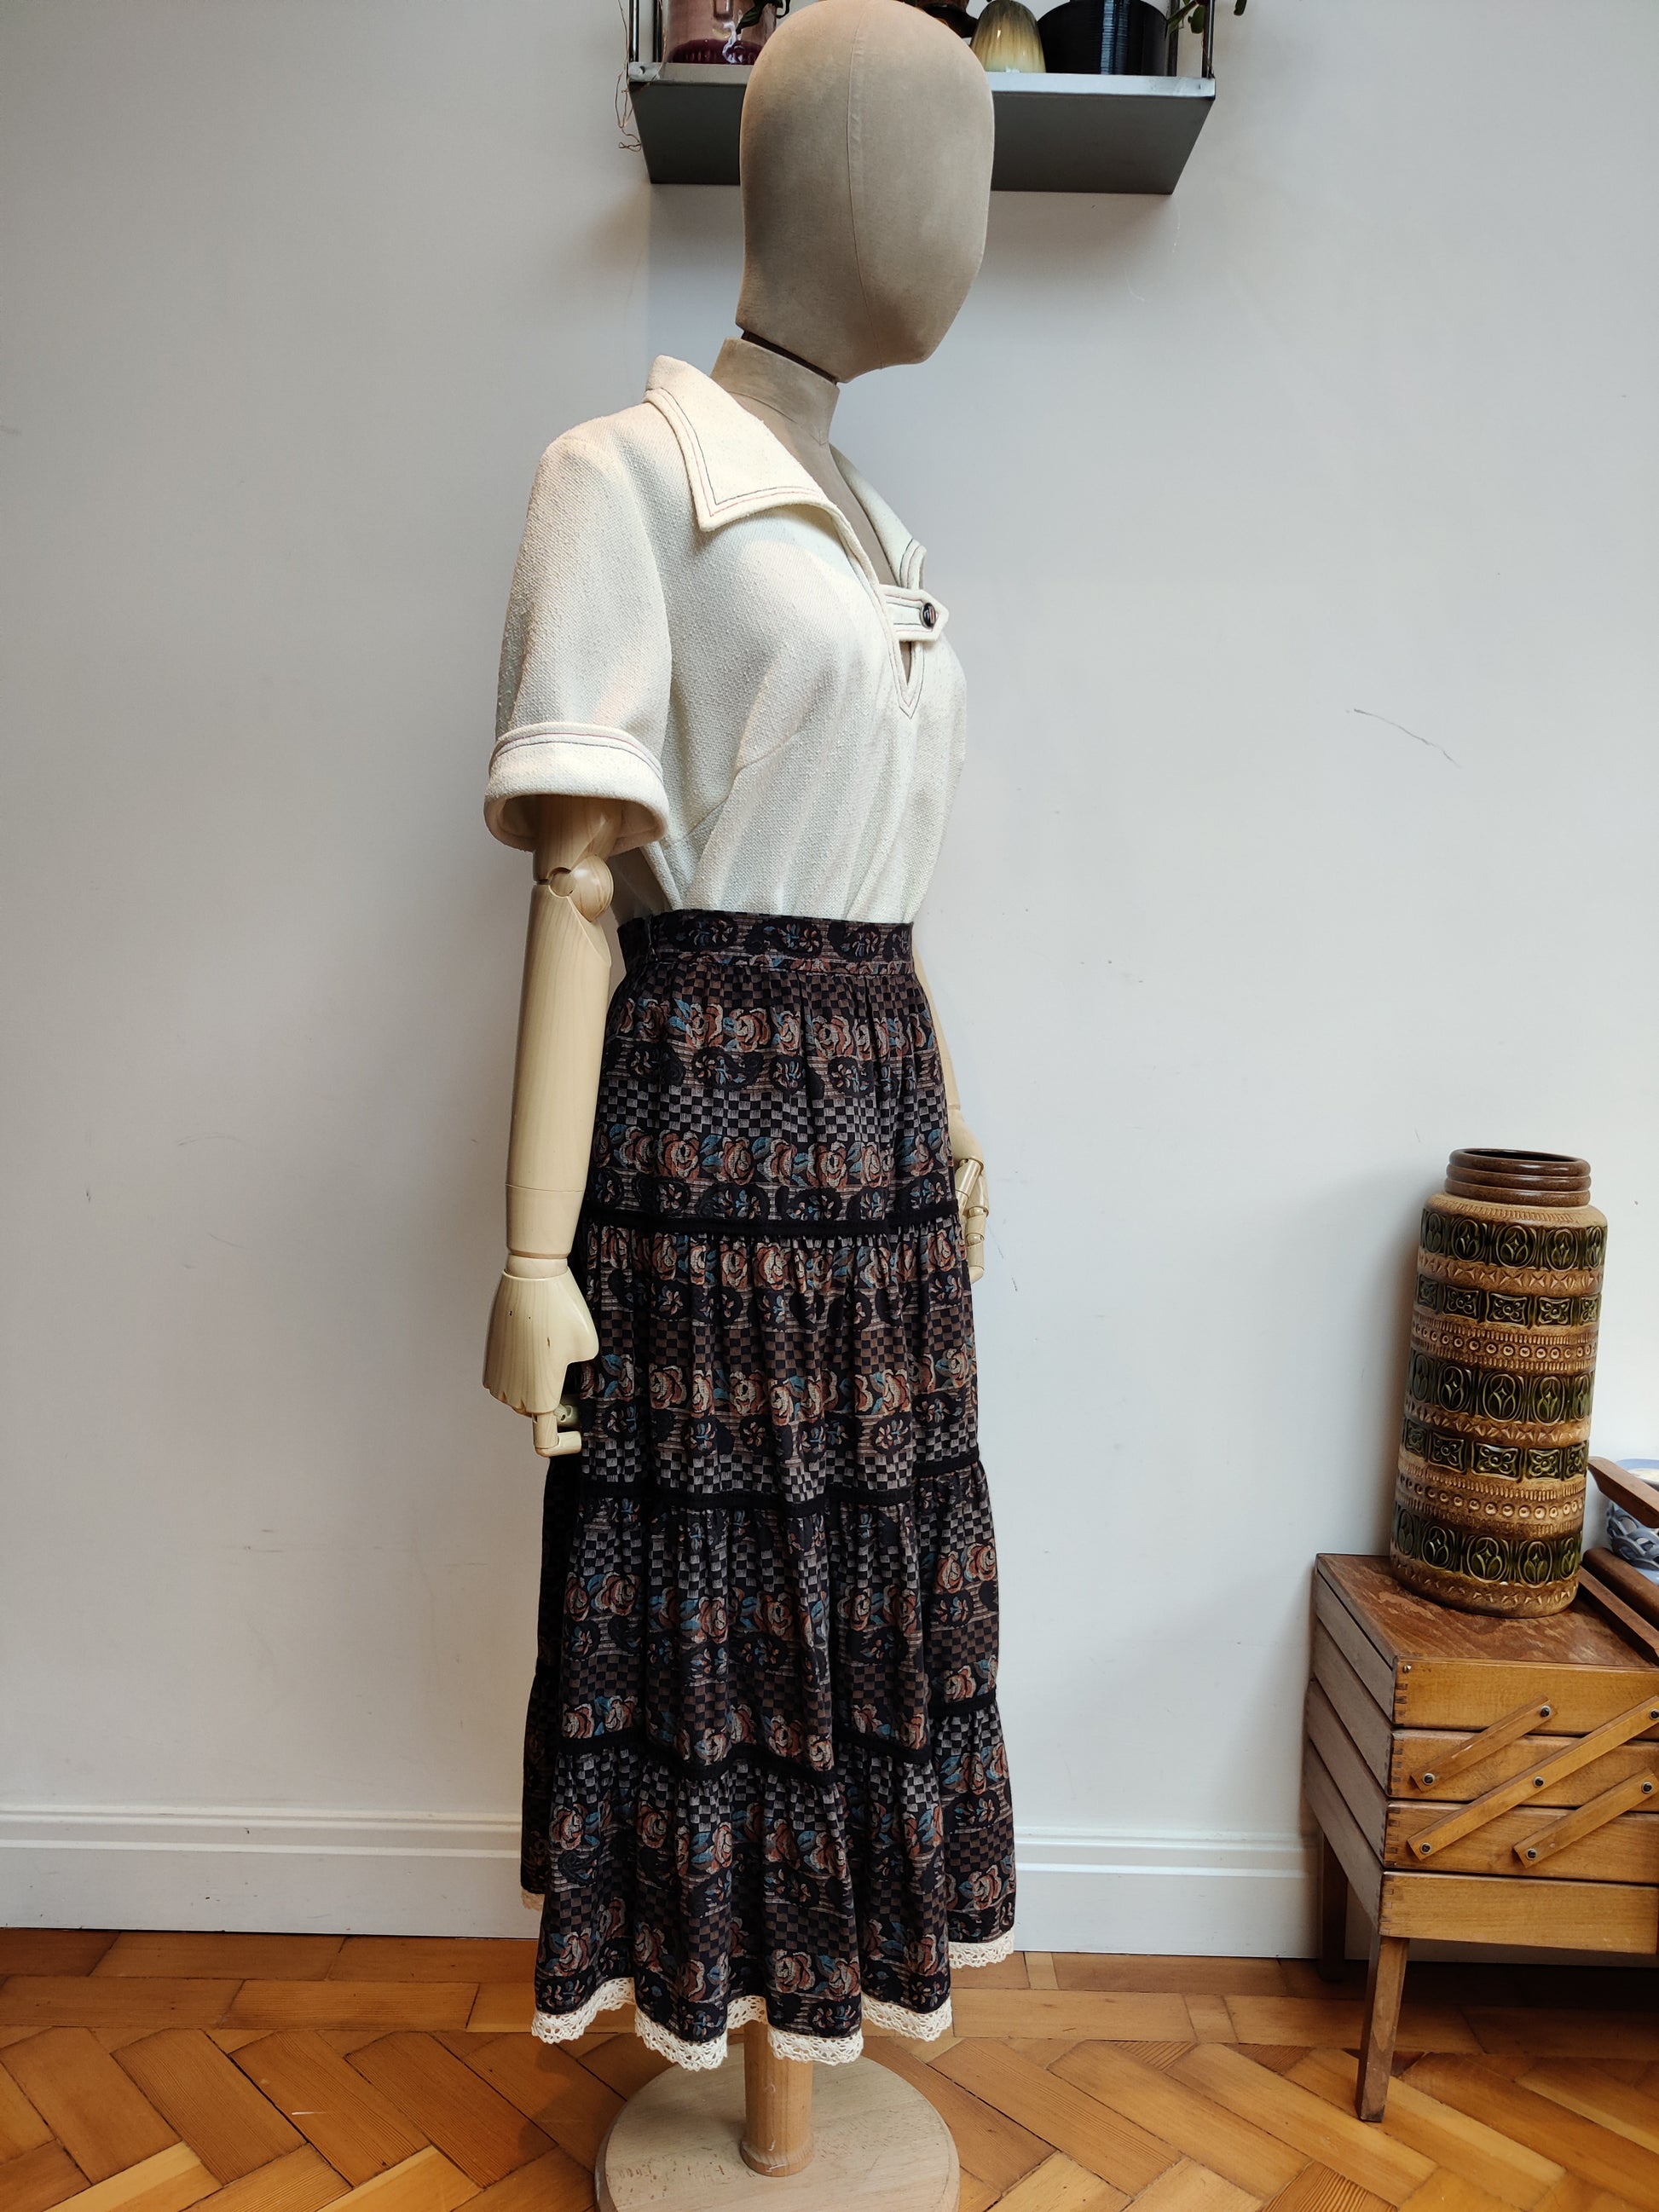 Black and brown vintage prairie skirt